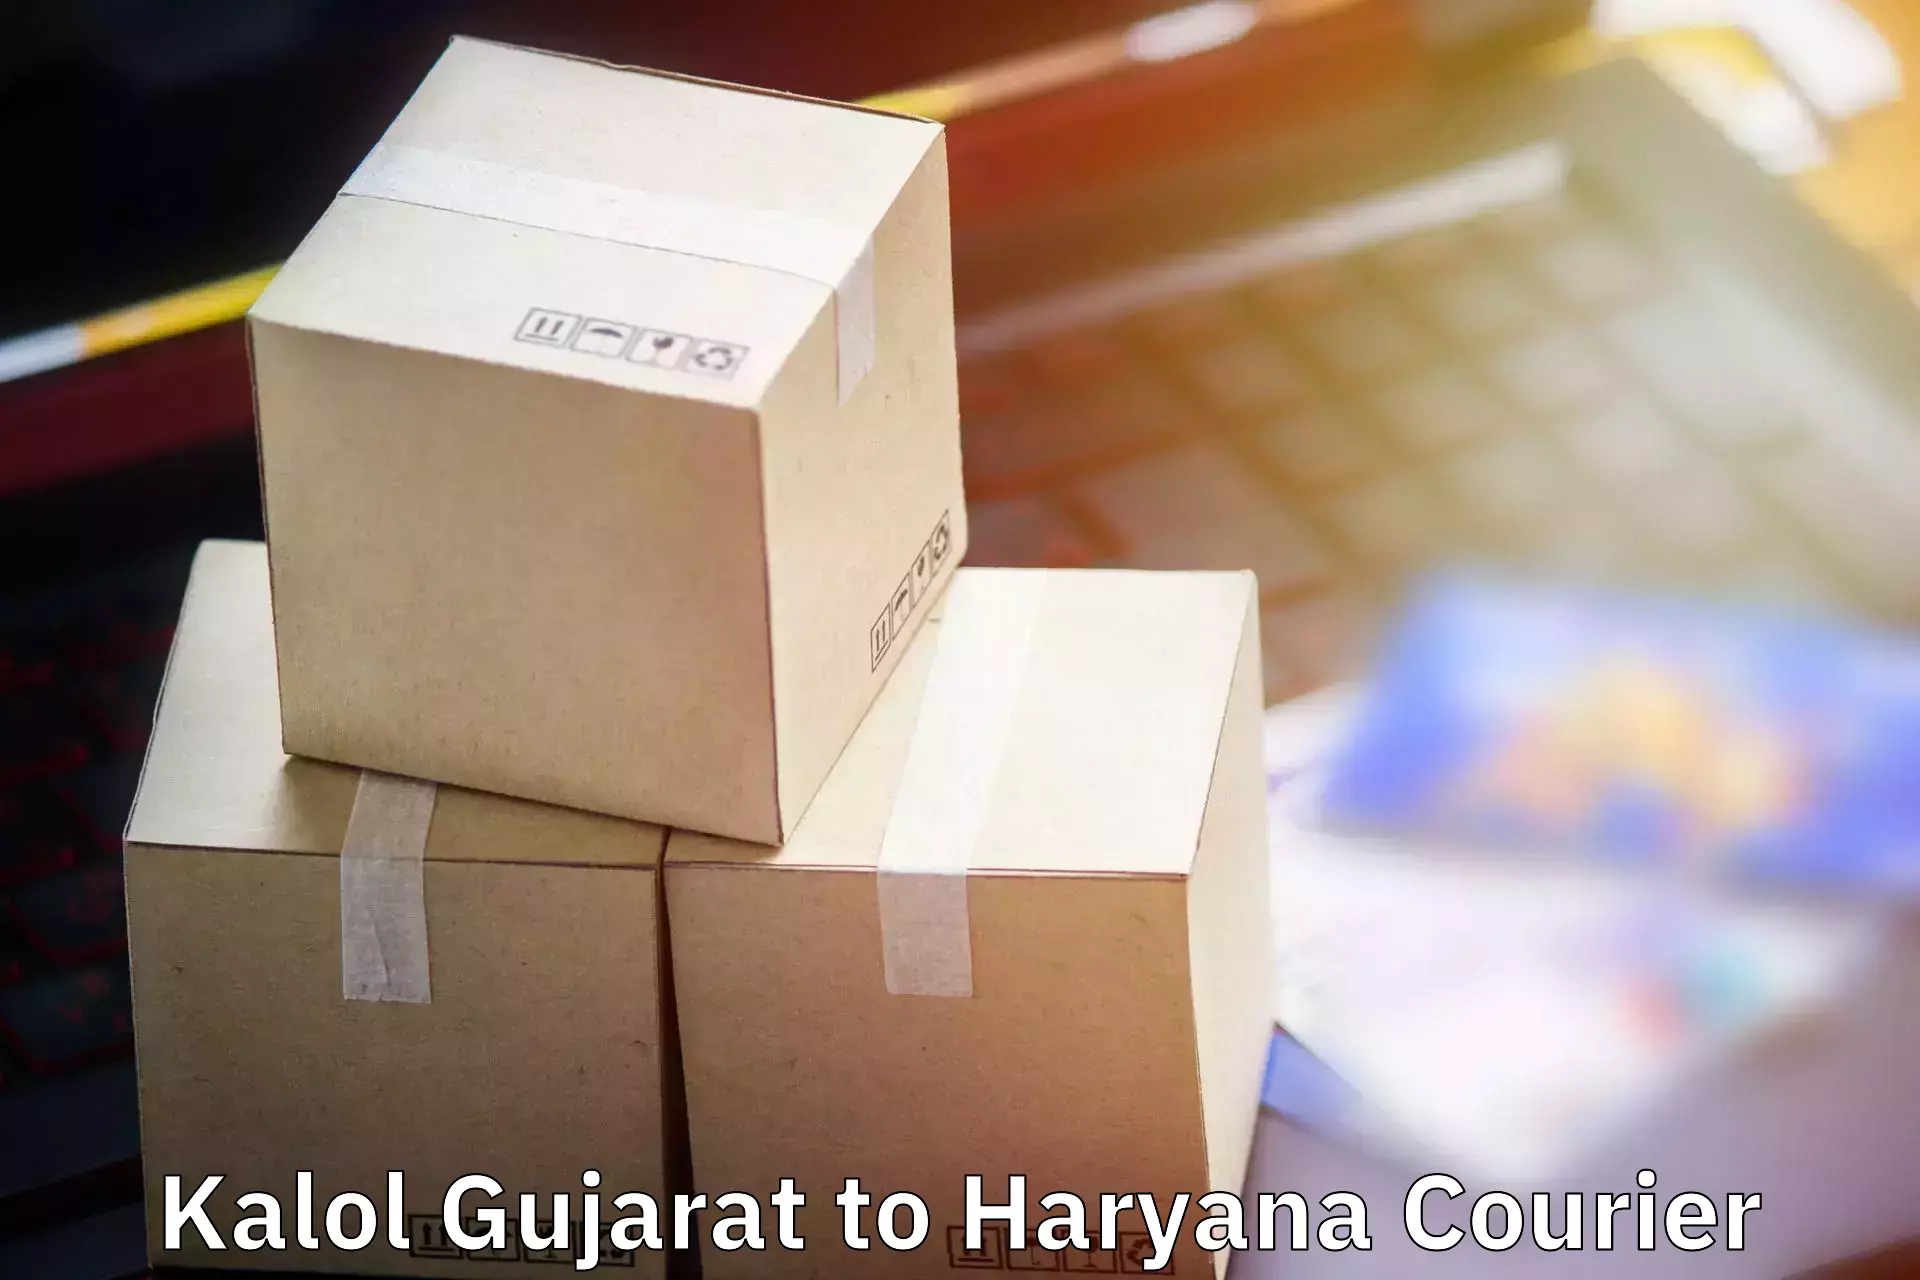 Hassle-free luggage shipping Kalol Gujarat to Bilaspur Haryana